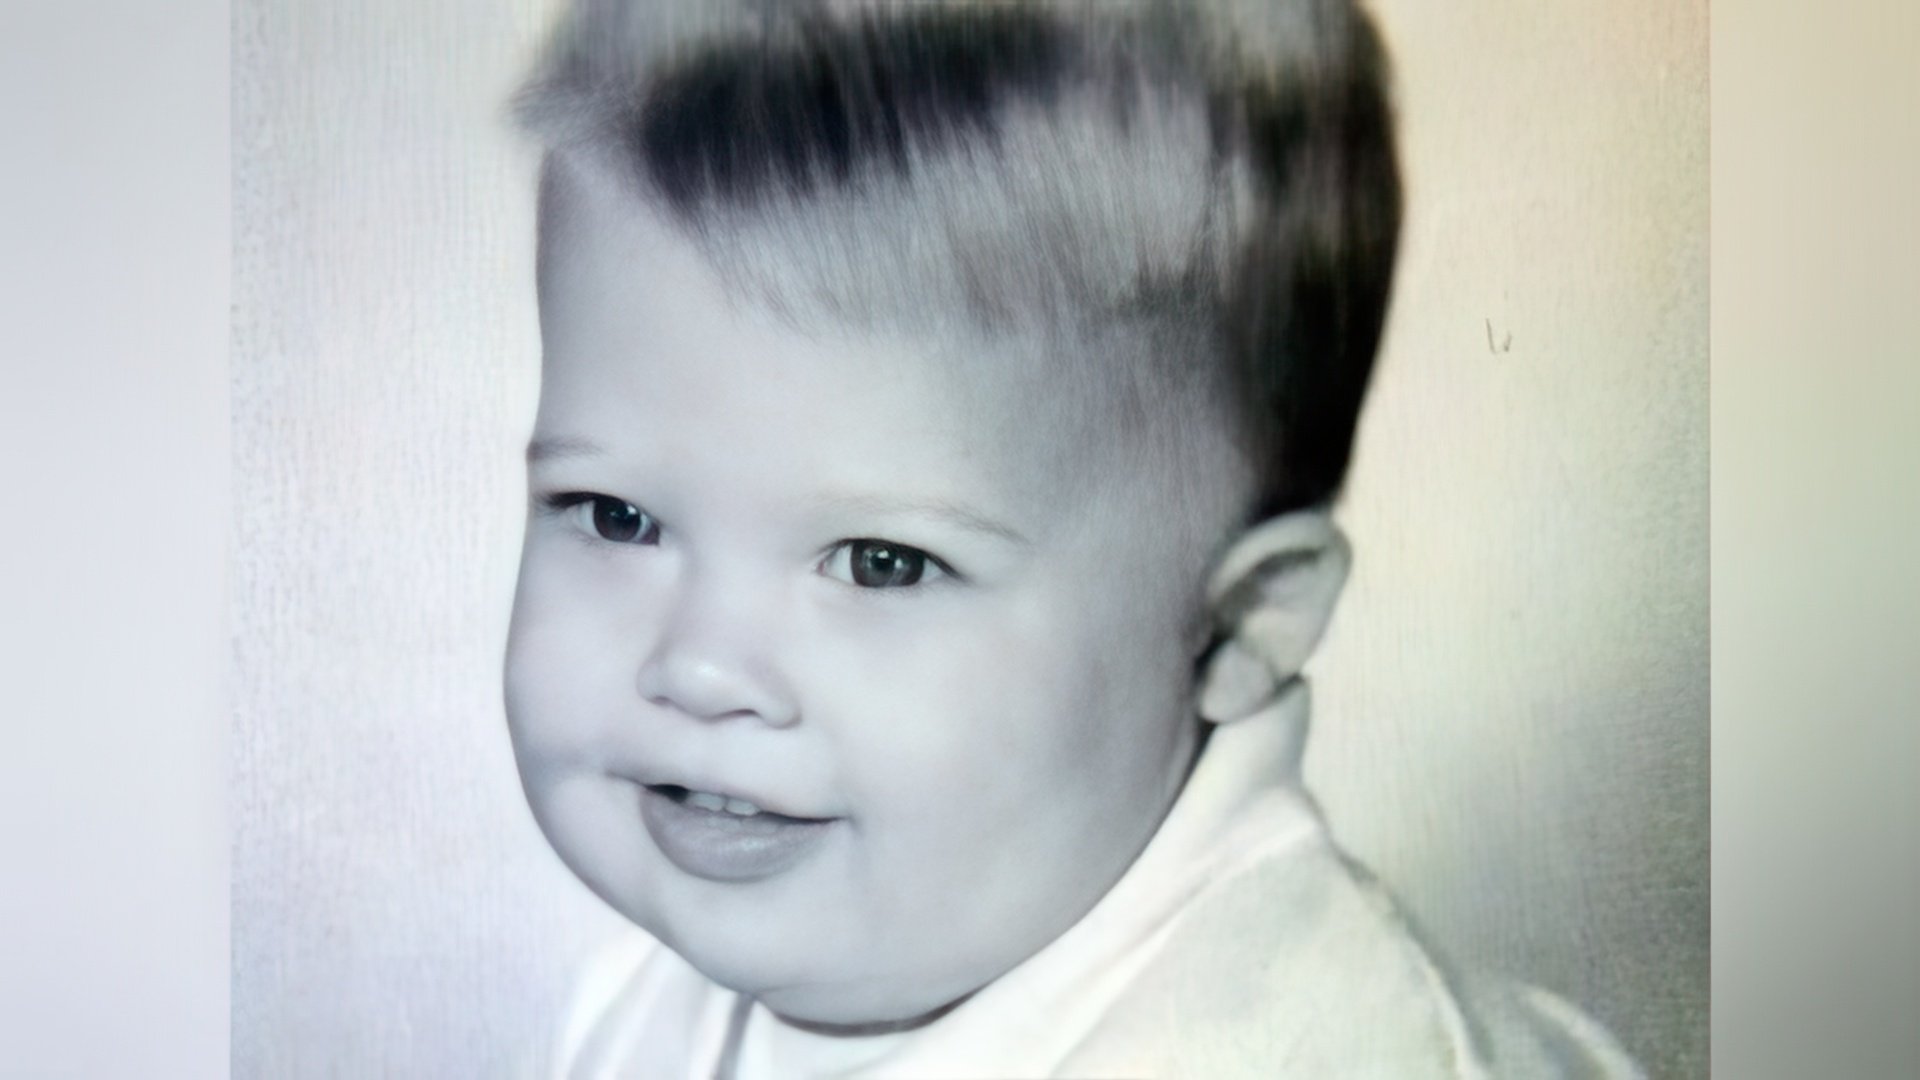 Brad Pitt as a newborn